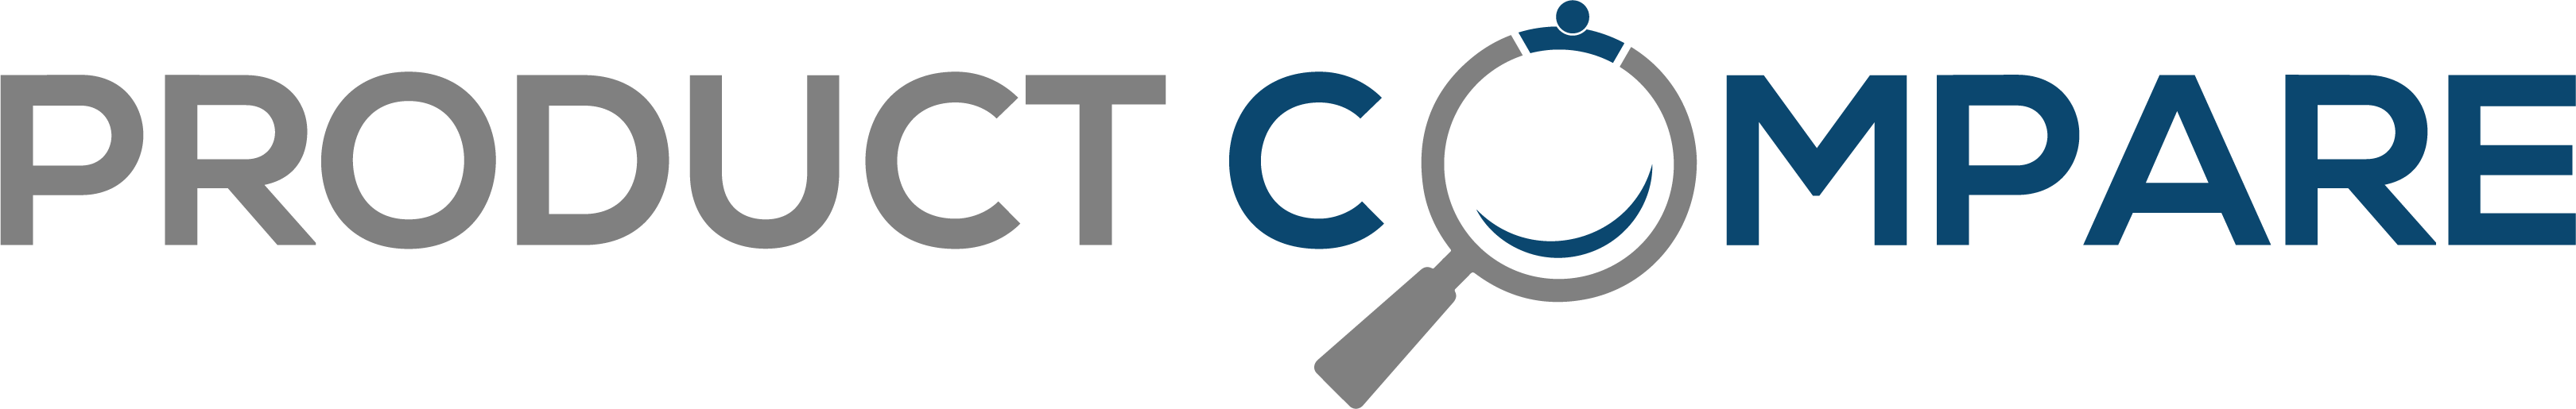 ProductCompare Logo